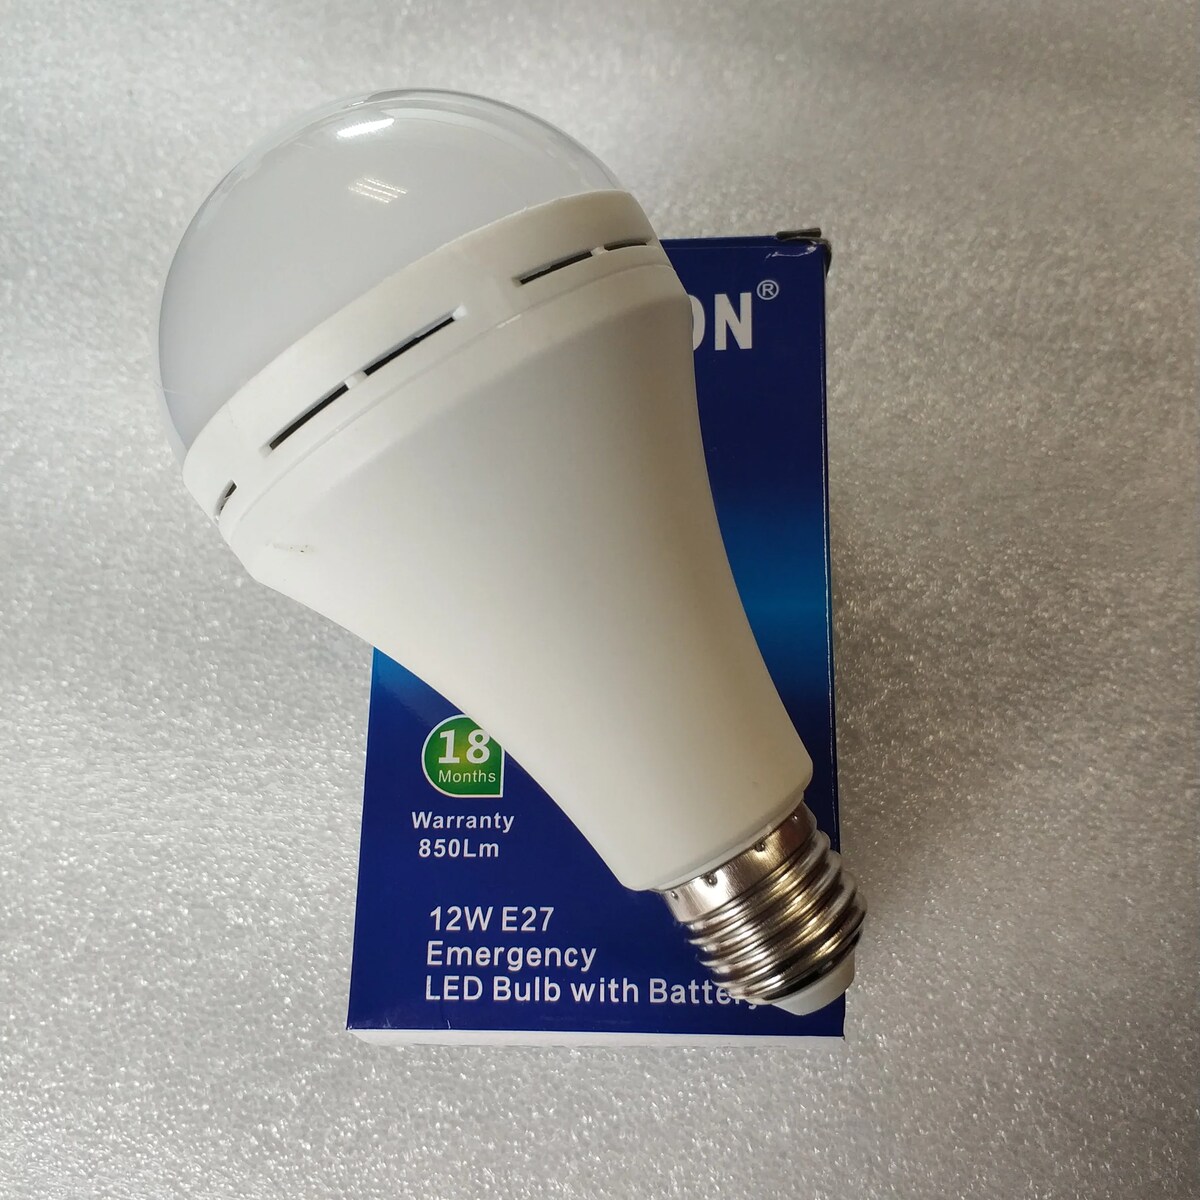 8 Best Emergency LED Bulb for 2023